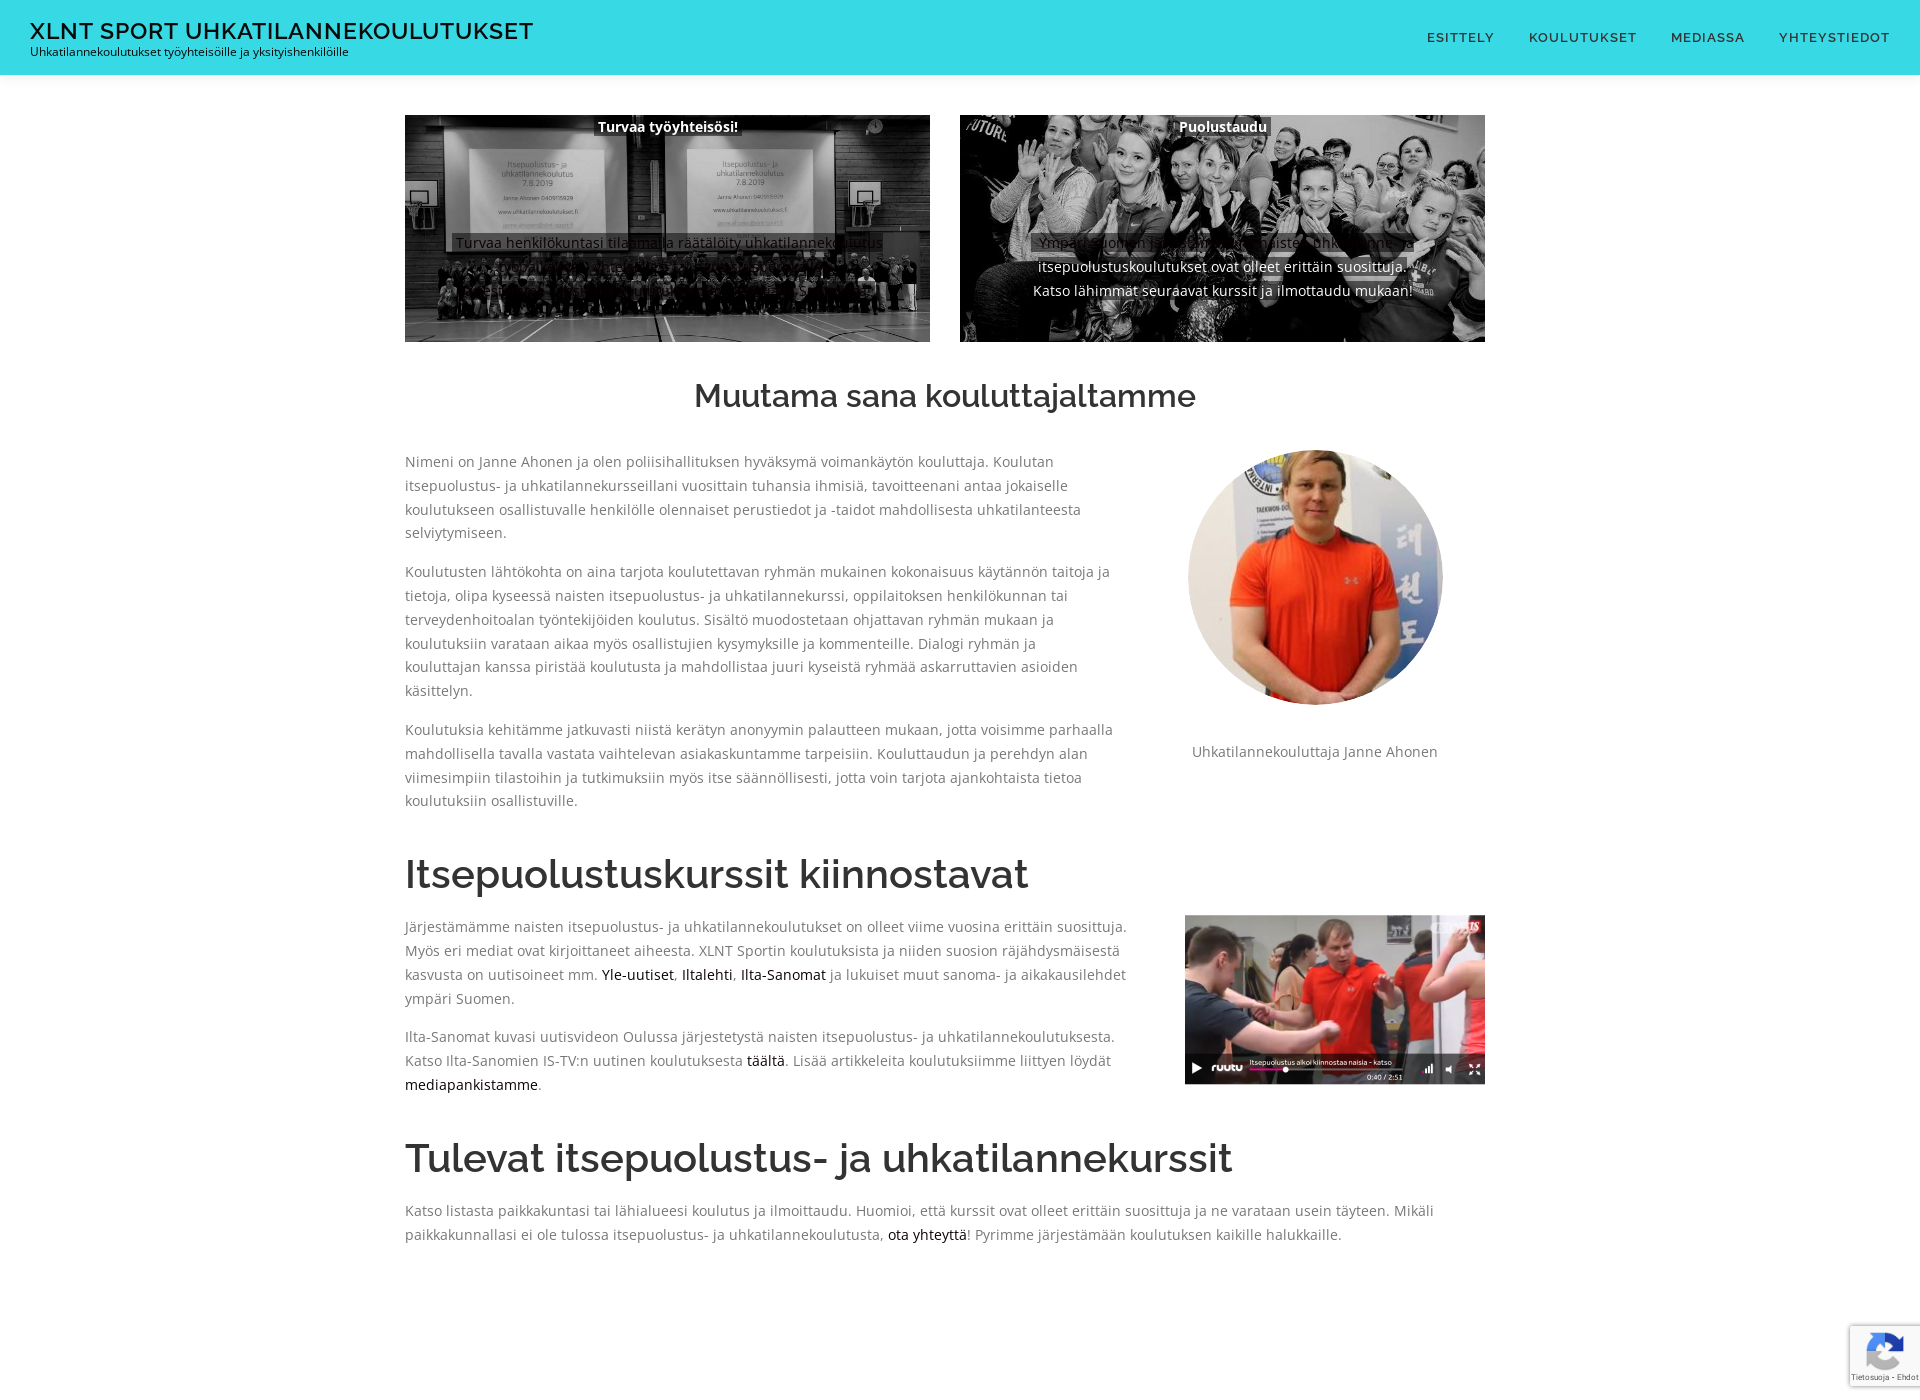 Screenshot for uhkatilannekoulutukset.fi